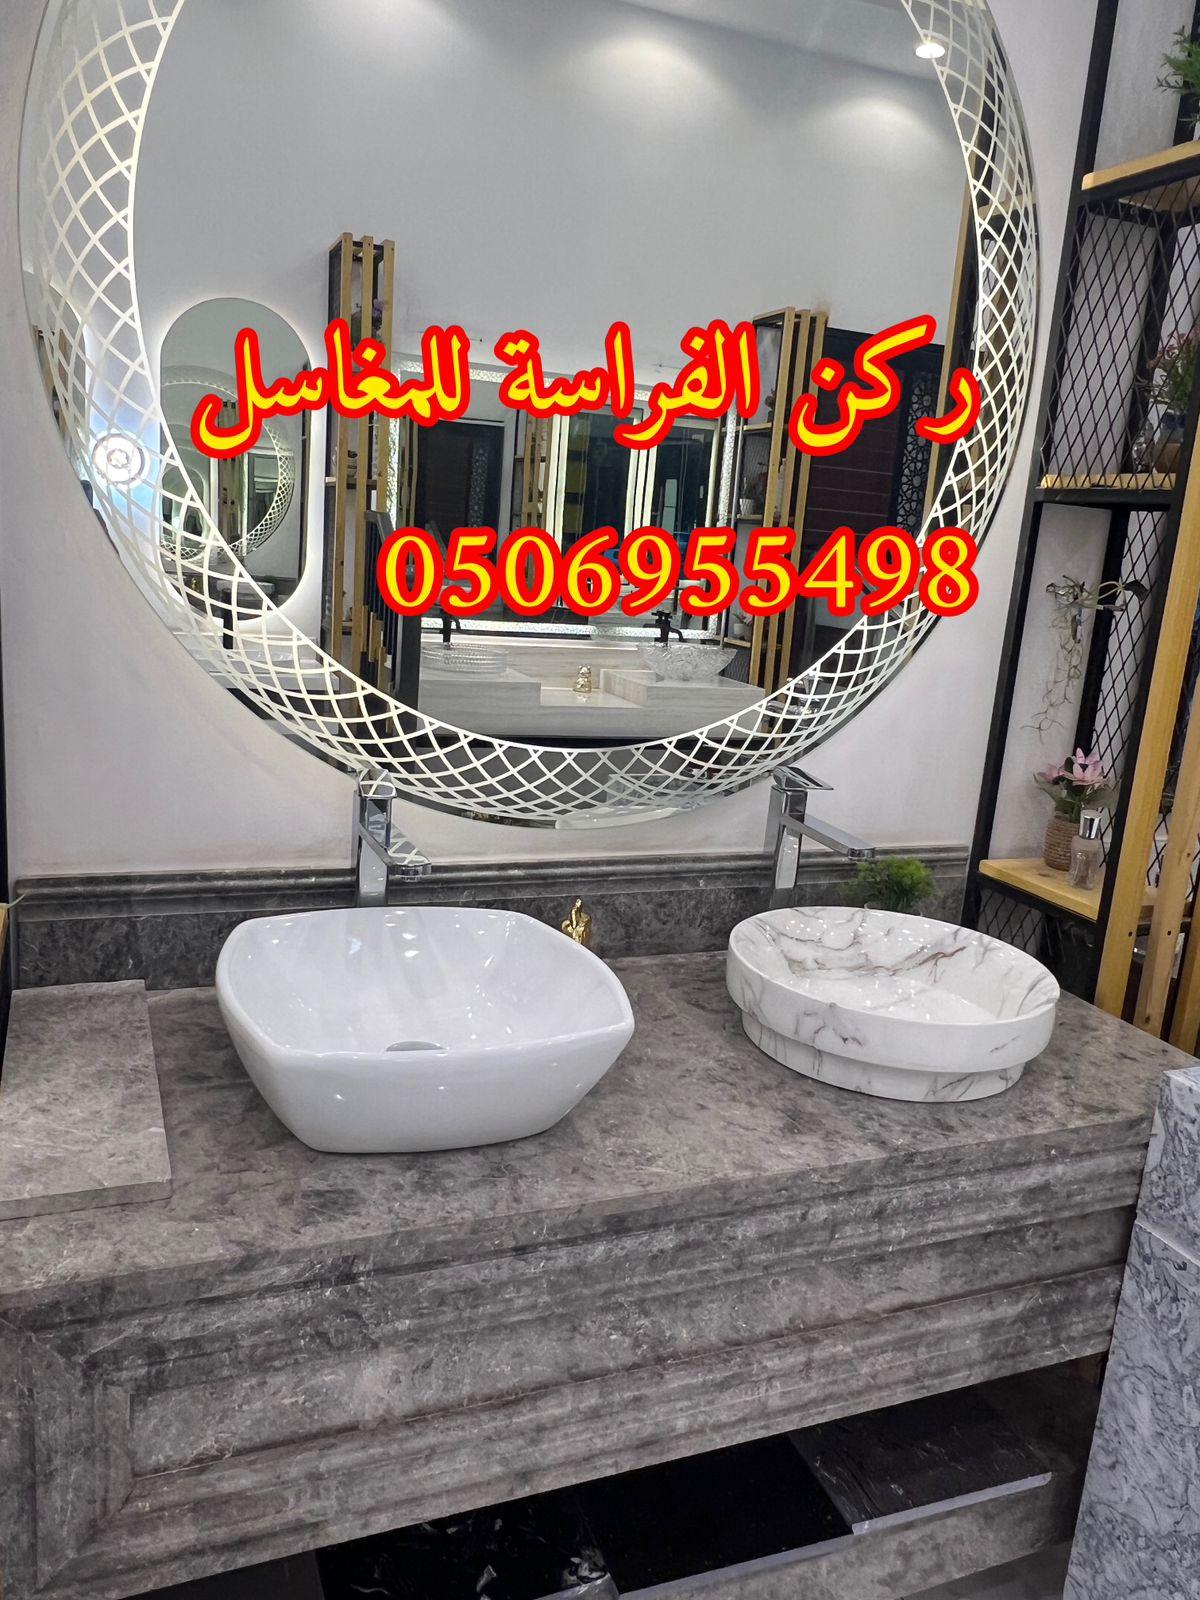 مغاسل رخام تفصيل في الرياض,0506955498 881341613